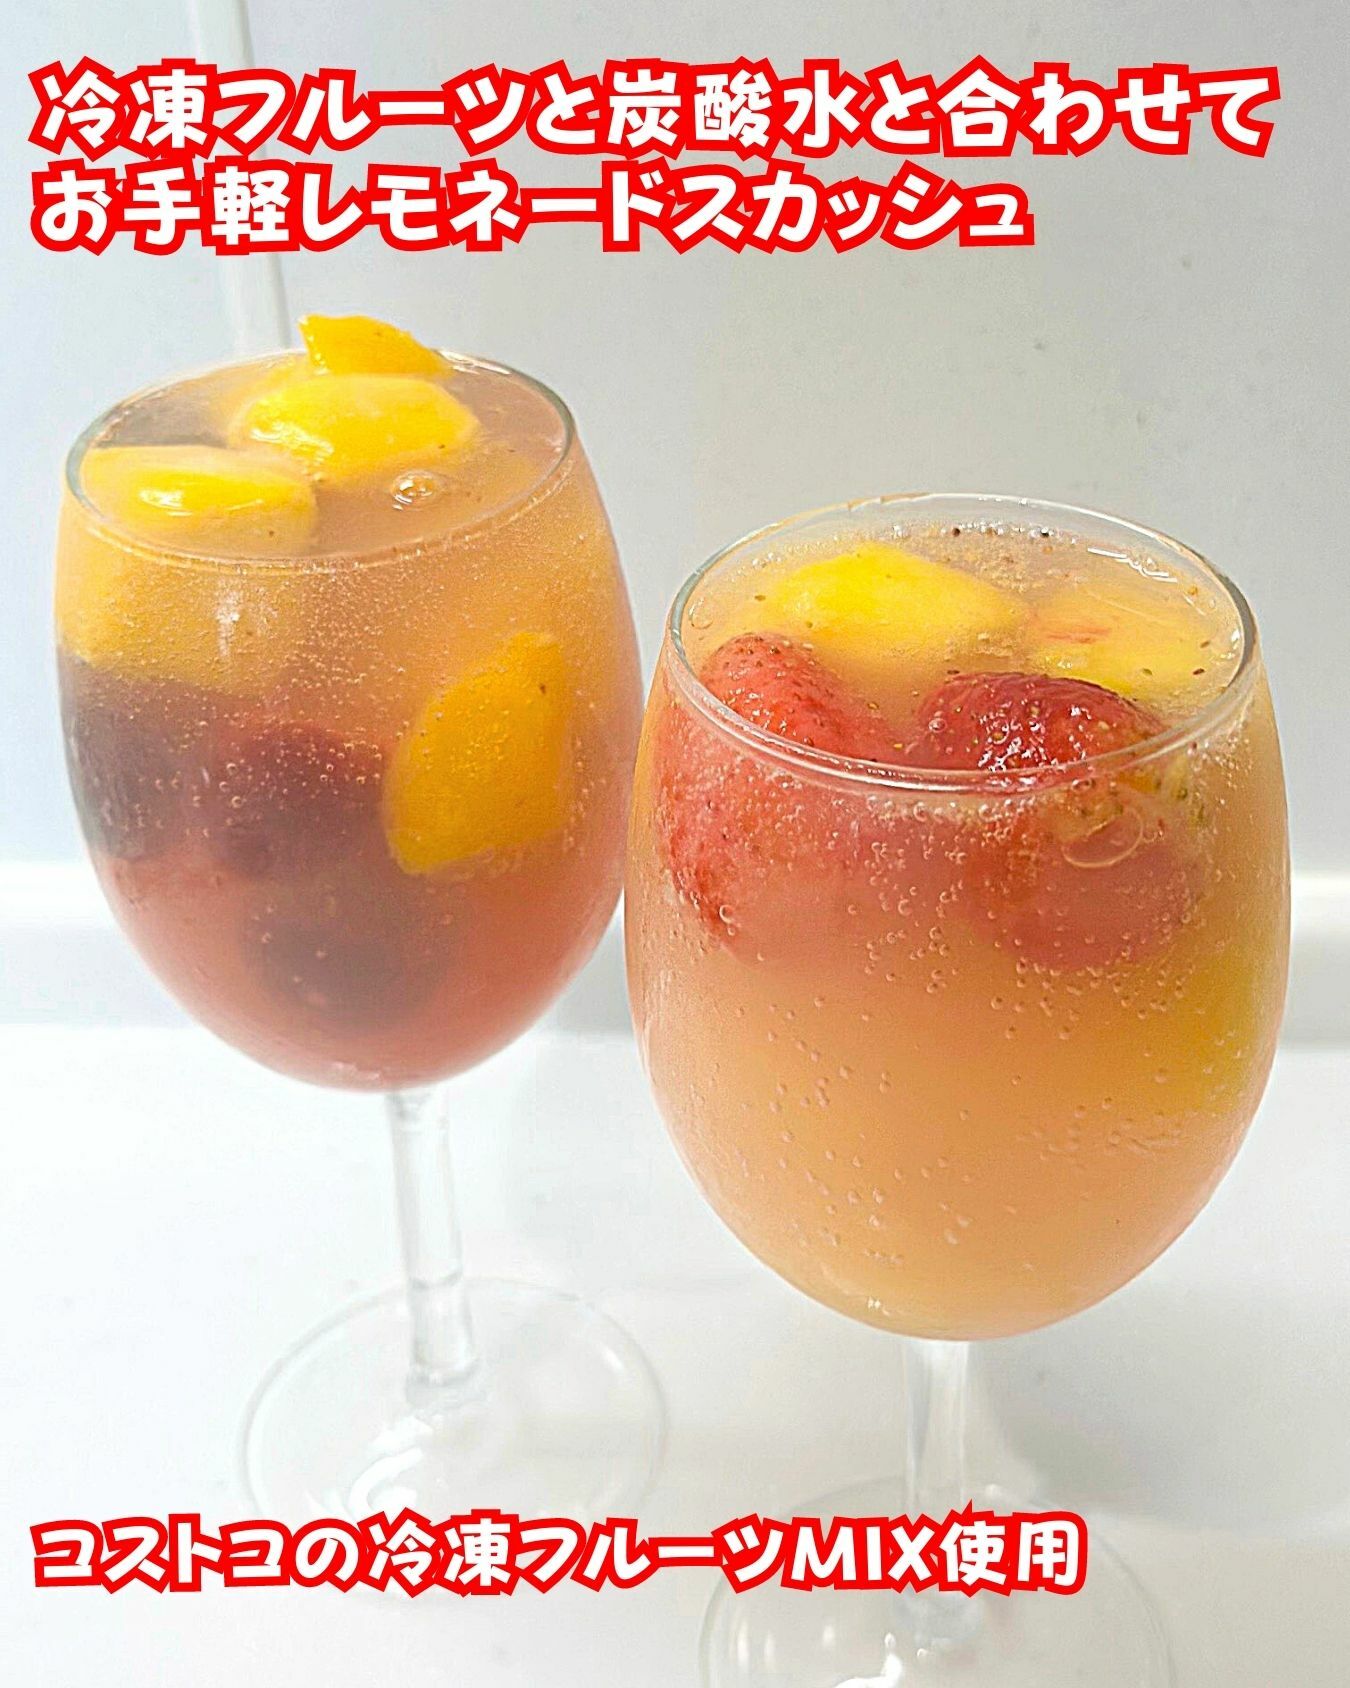 【コストコ】冷凍フルーツを使ったピンクレモネードスカッシュ